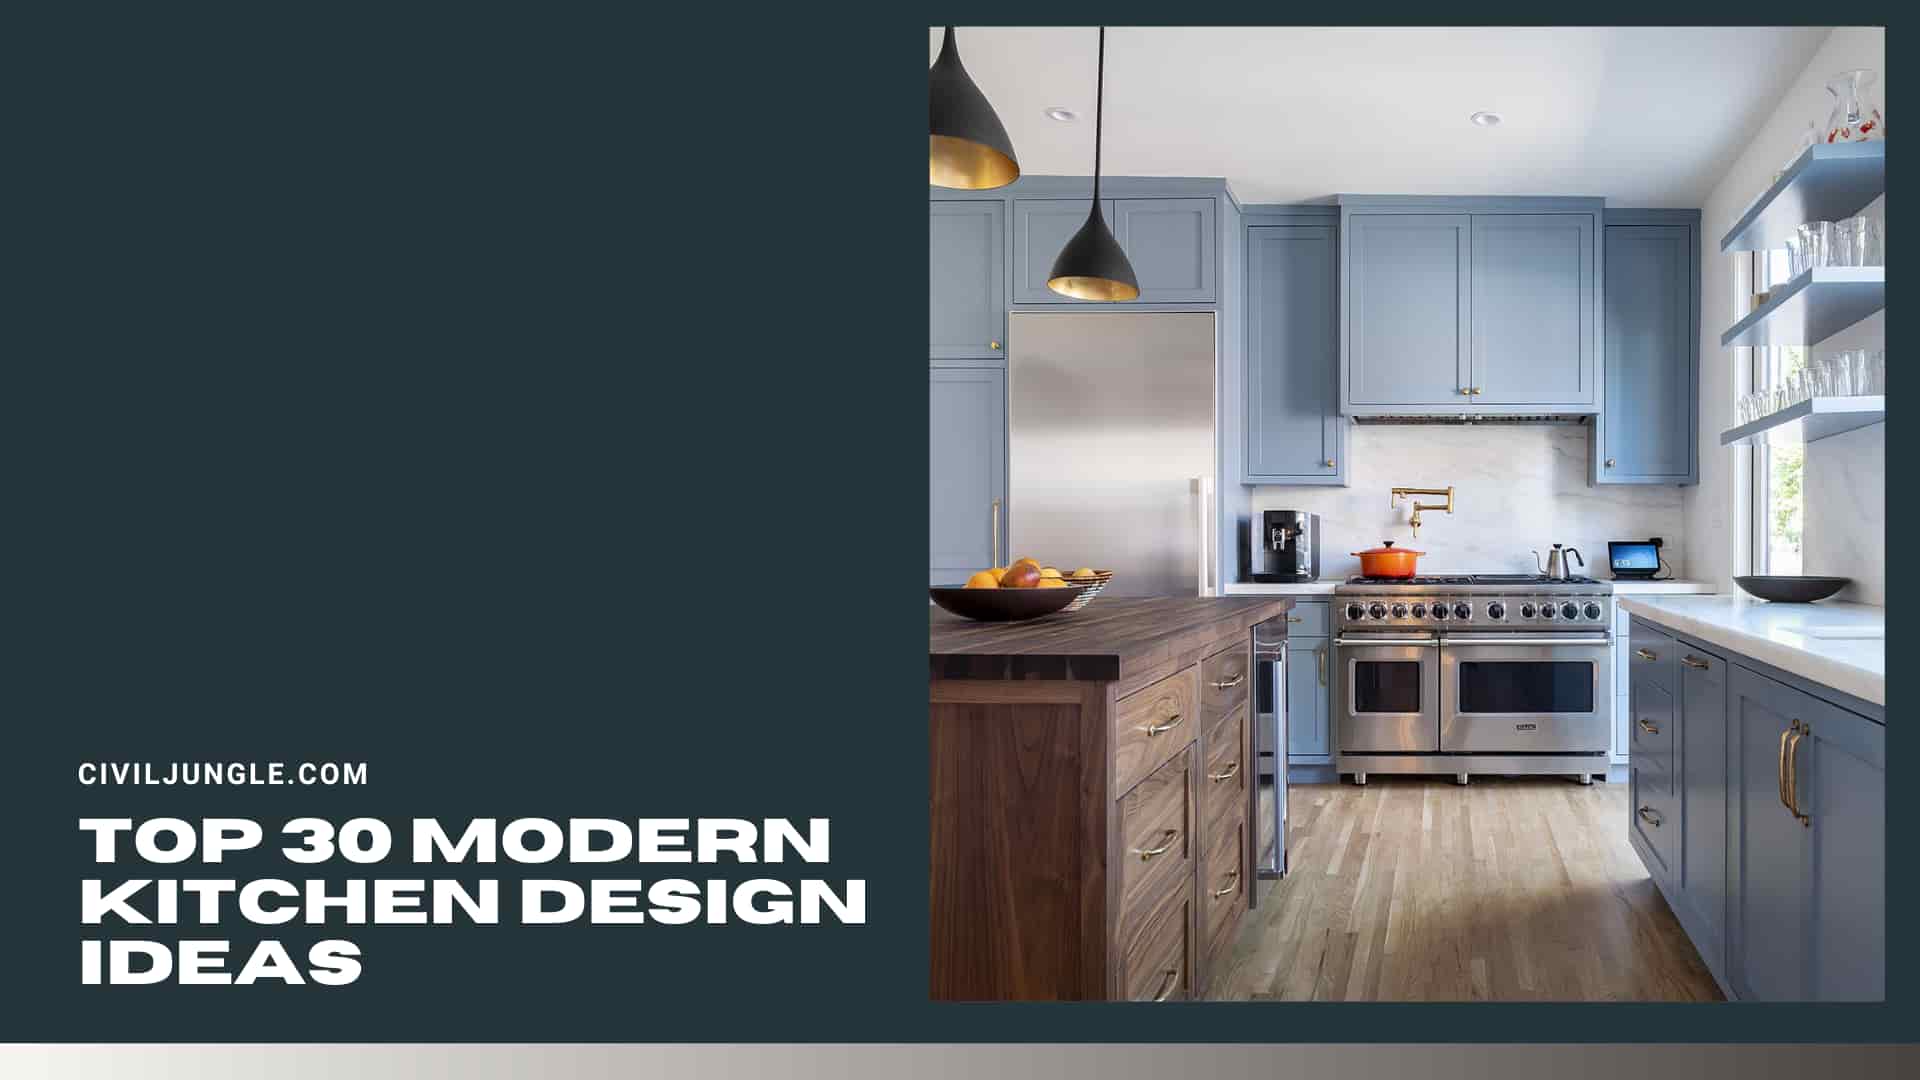 Top 30 Modern Kitchen Design Ideas